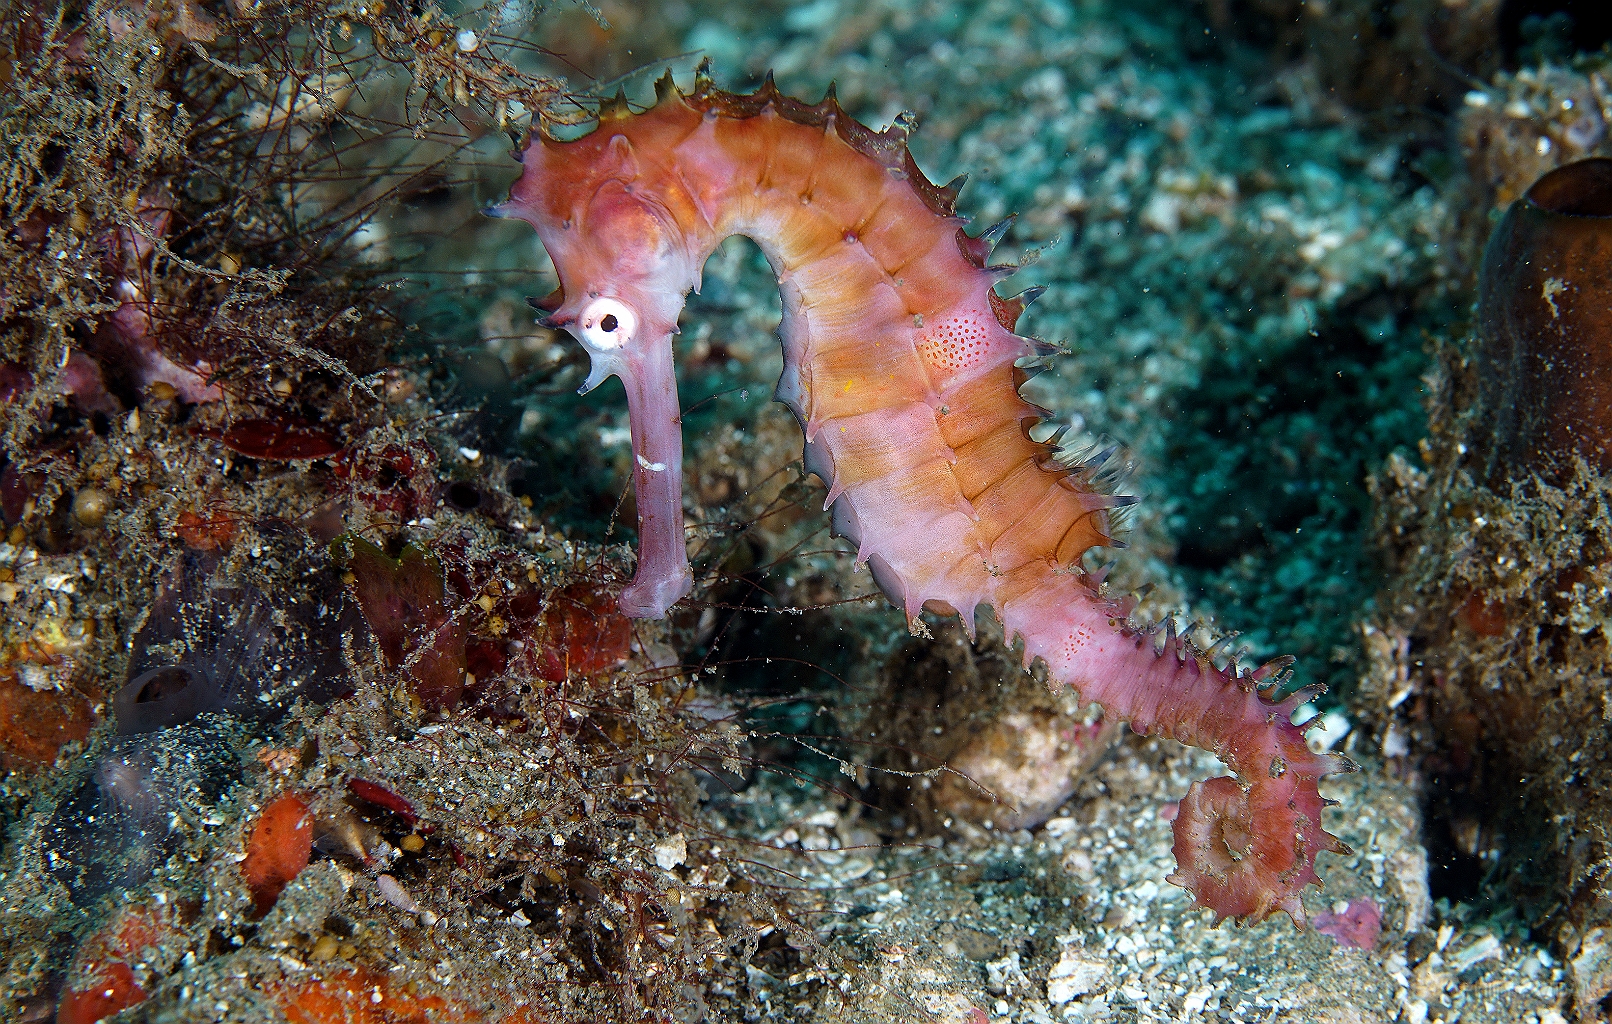 Banda Sea 2018 - DSC05491_rc - Thorny seahorse - Hyppocampe herisse - Hippocampus histrix.jpg